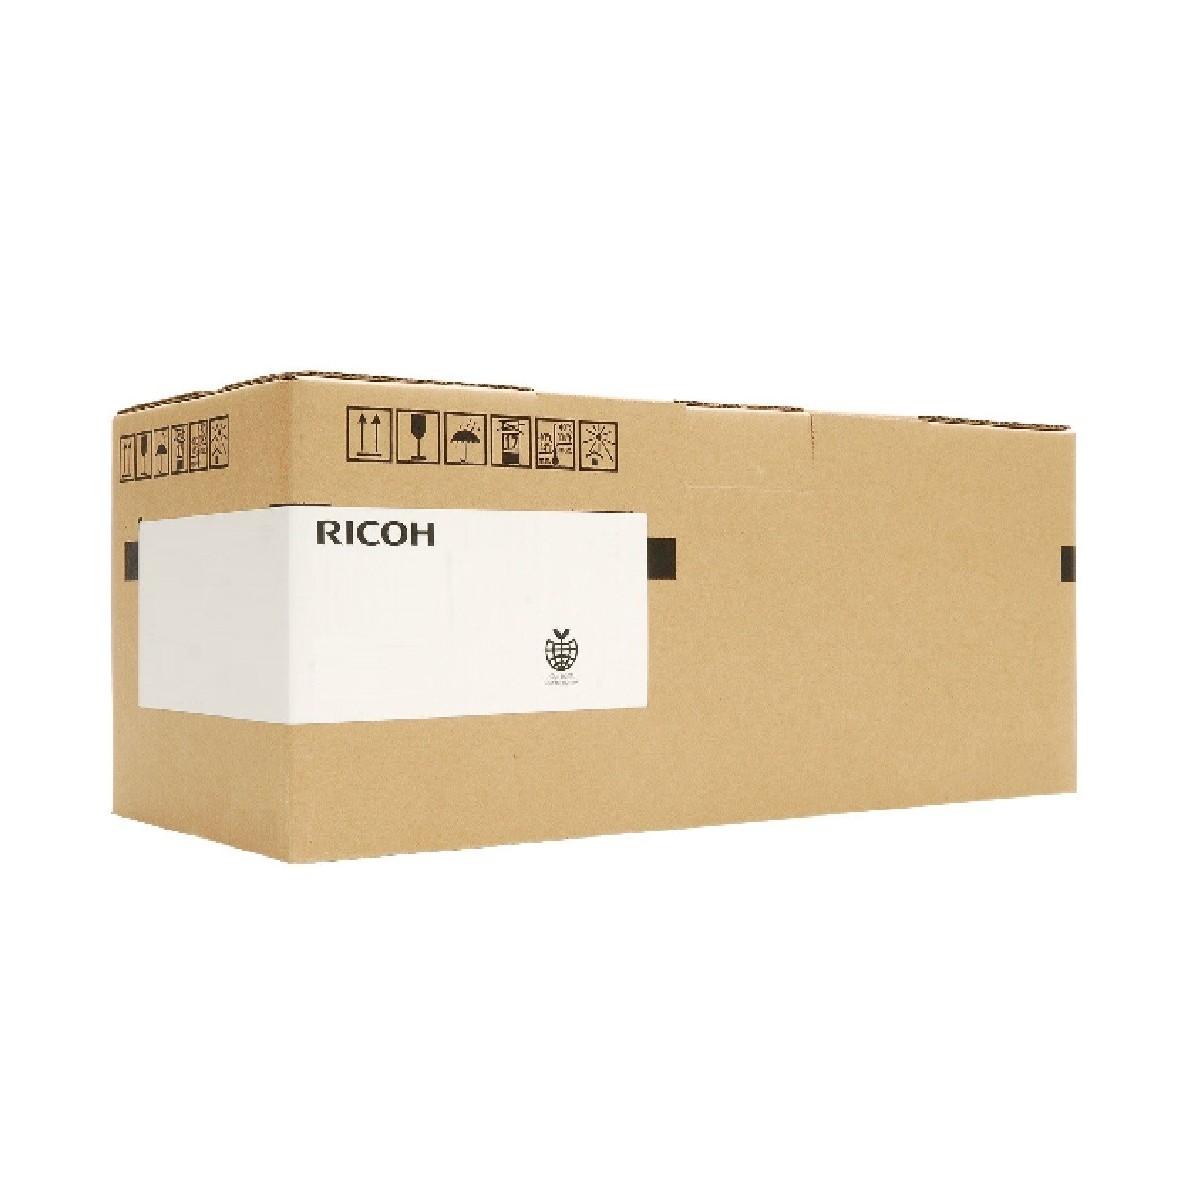 Ricoh Type 5000 - Kit für Fixiereinheit - Aficio CL5000